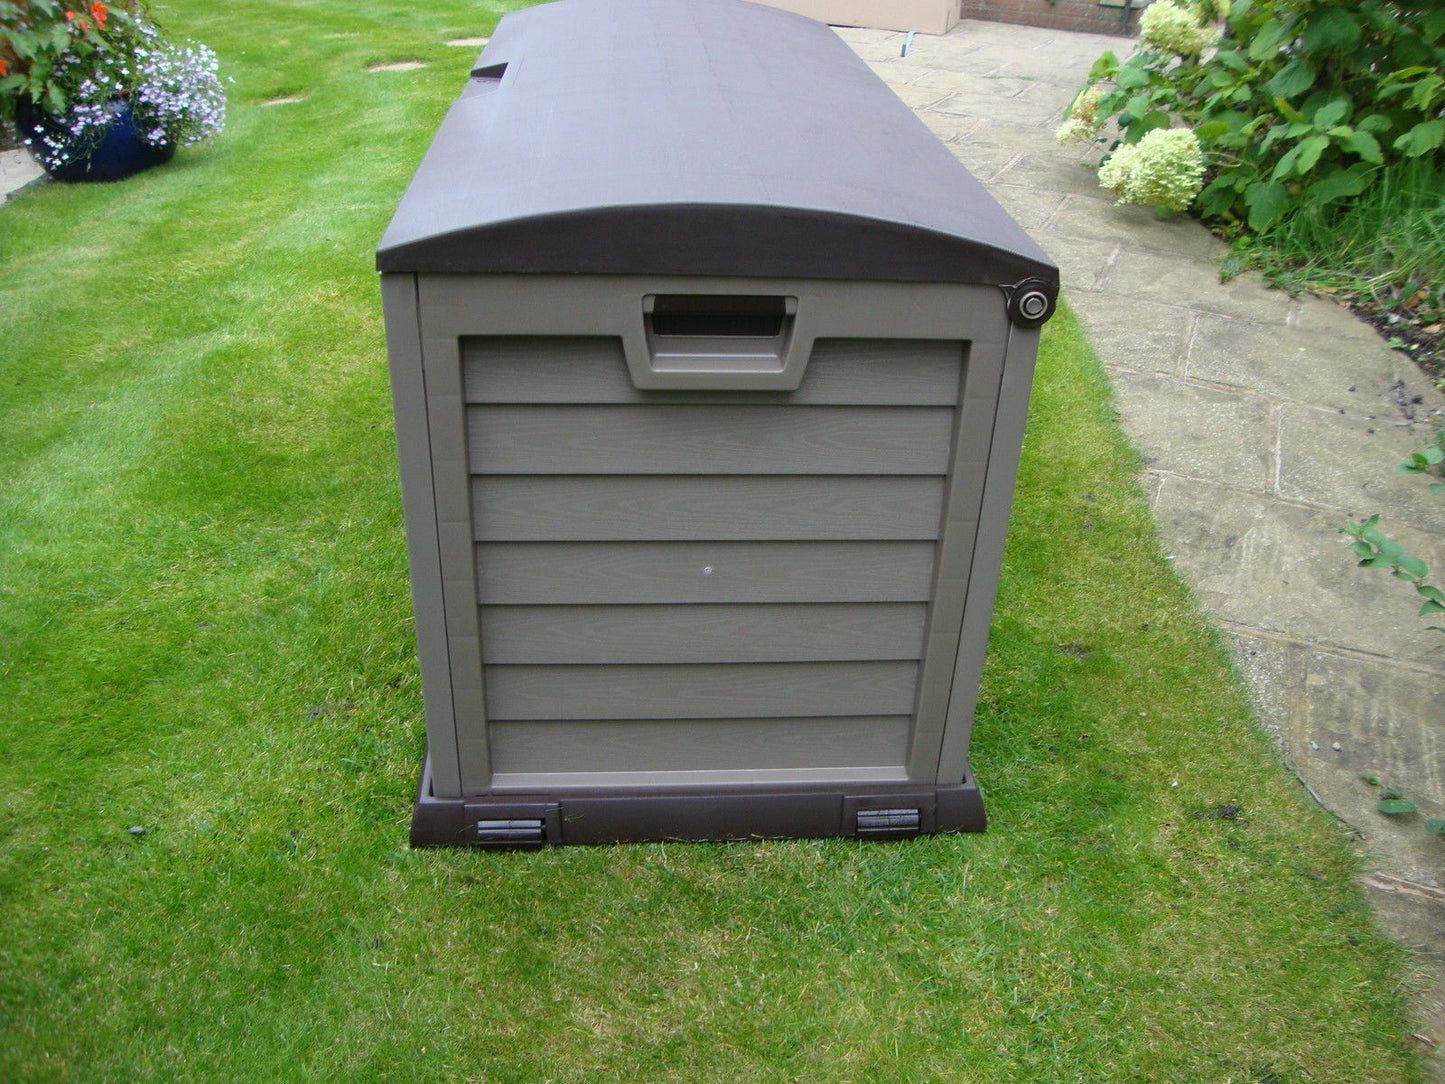 Outdoor Garden Storage Box